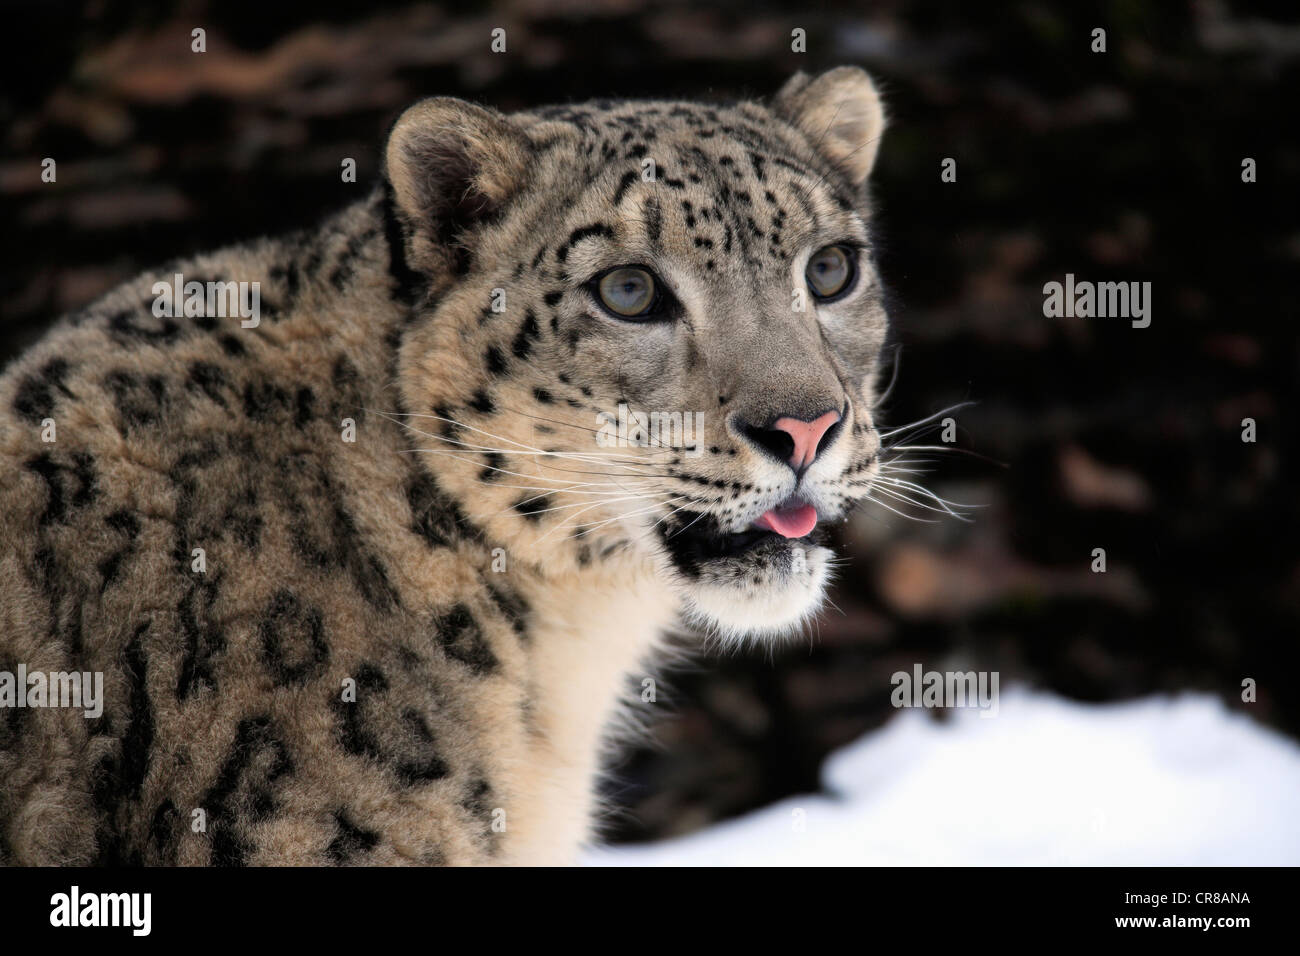 Snow Leopard (Uncia uncia), Adulto, Ritratto, Neve, in inverno, Asia Foto Stock